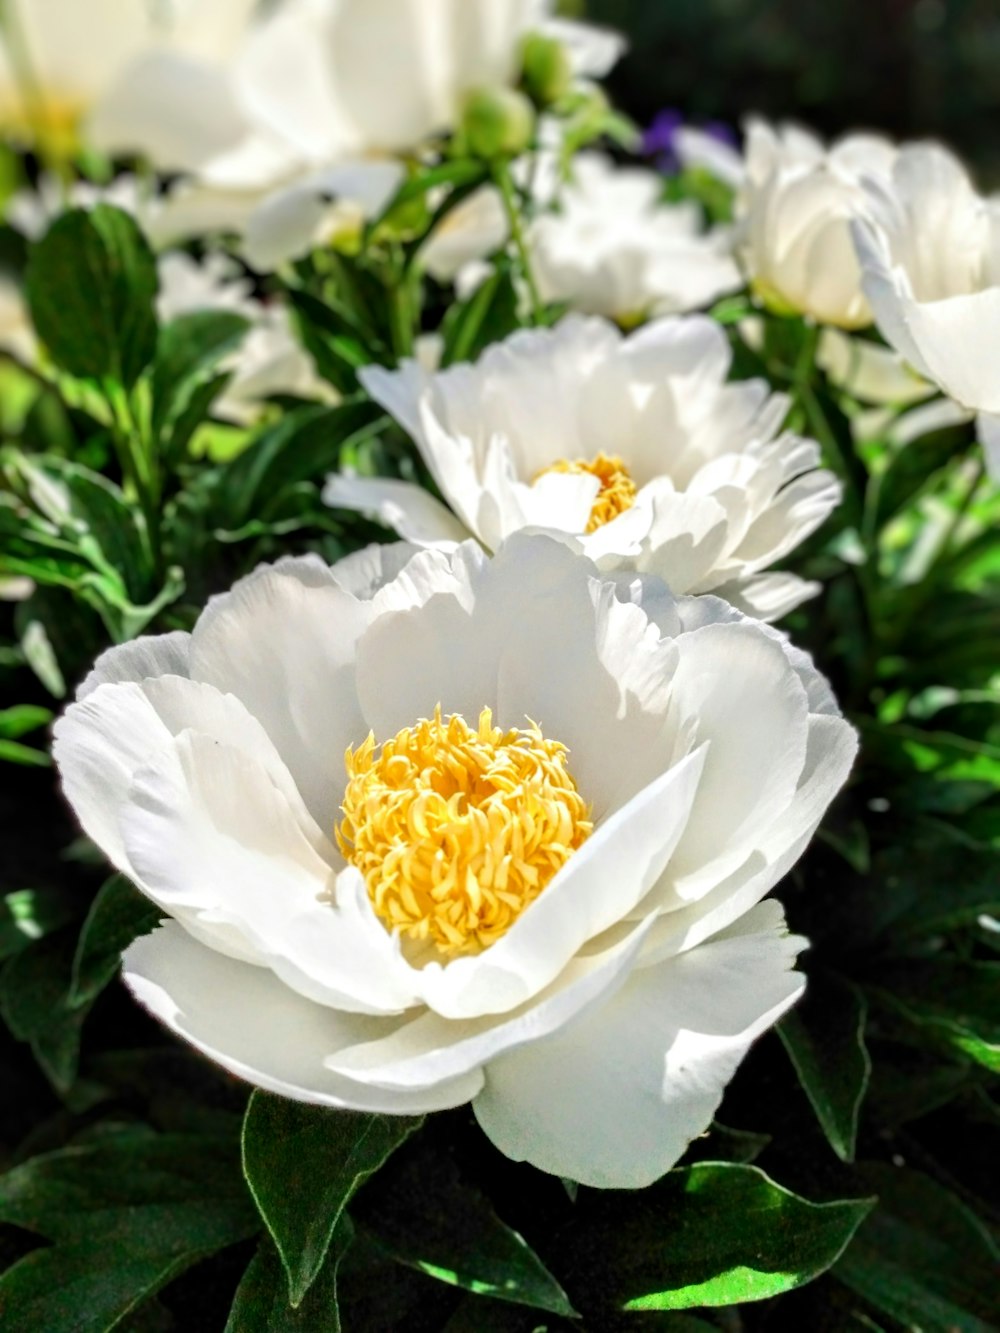 une fleur blanche avec un centre jaune